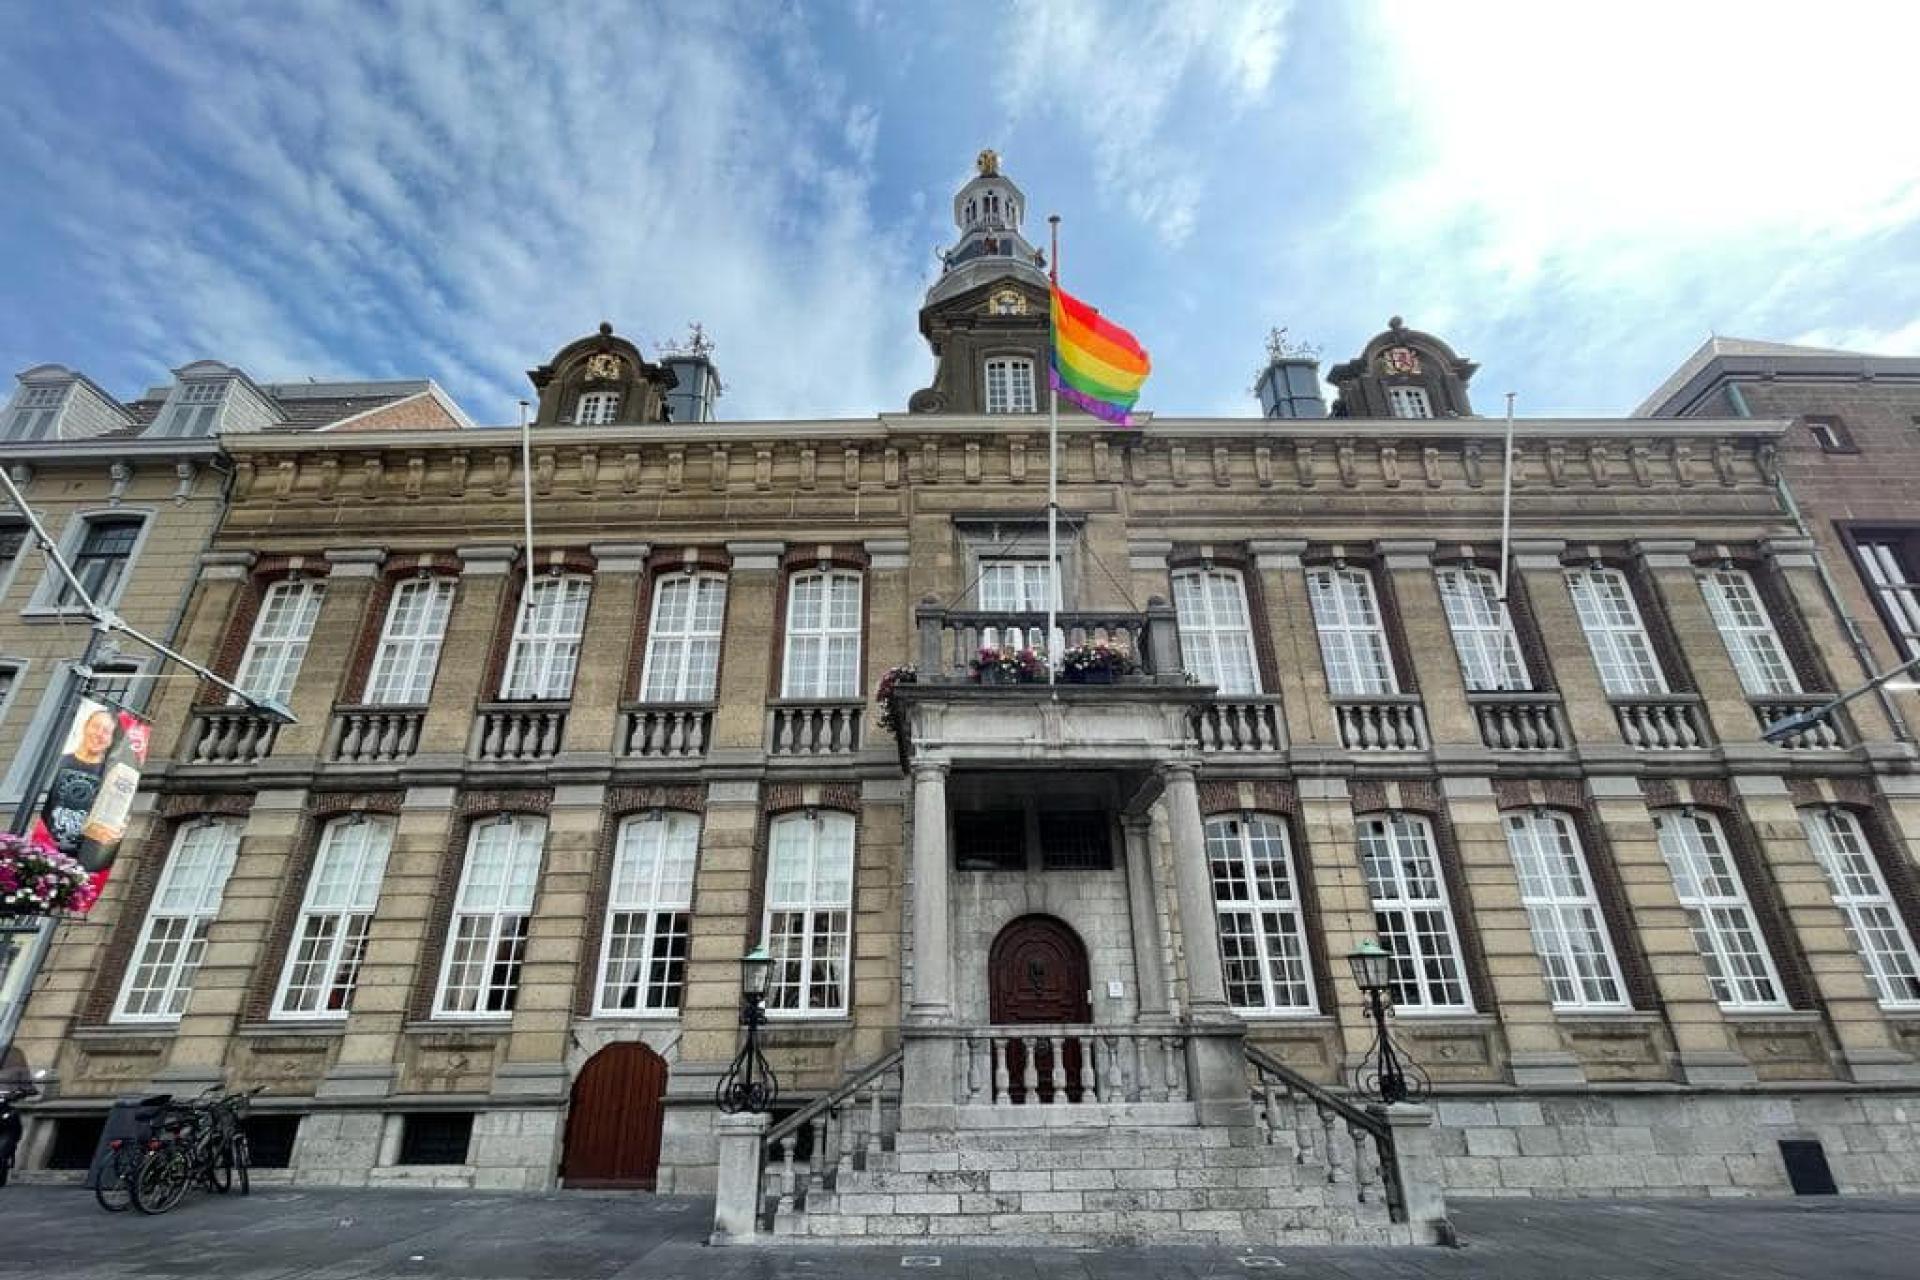 De regenboogvlag hangt aan het stadhuis van Roermond